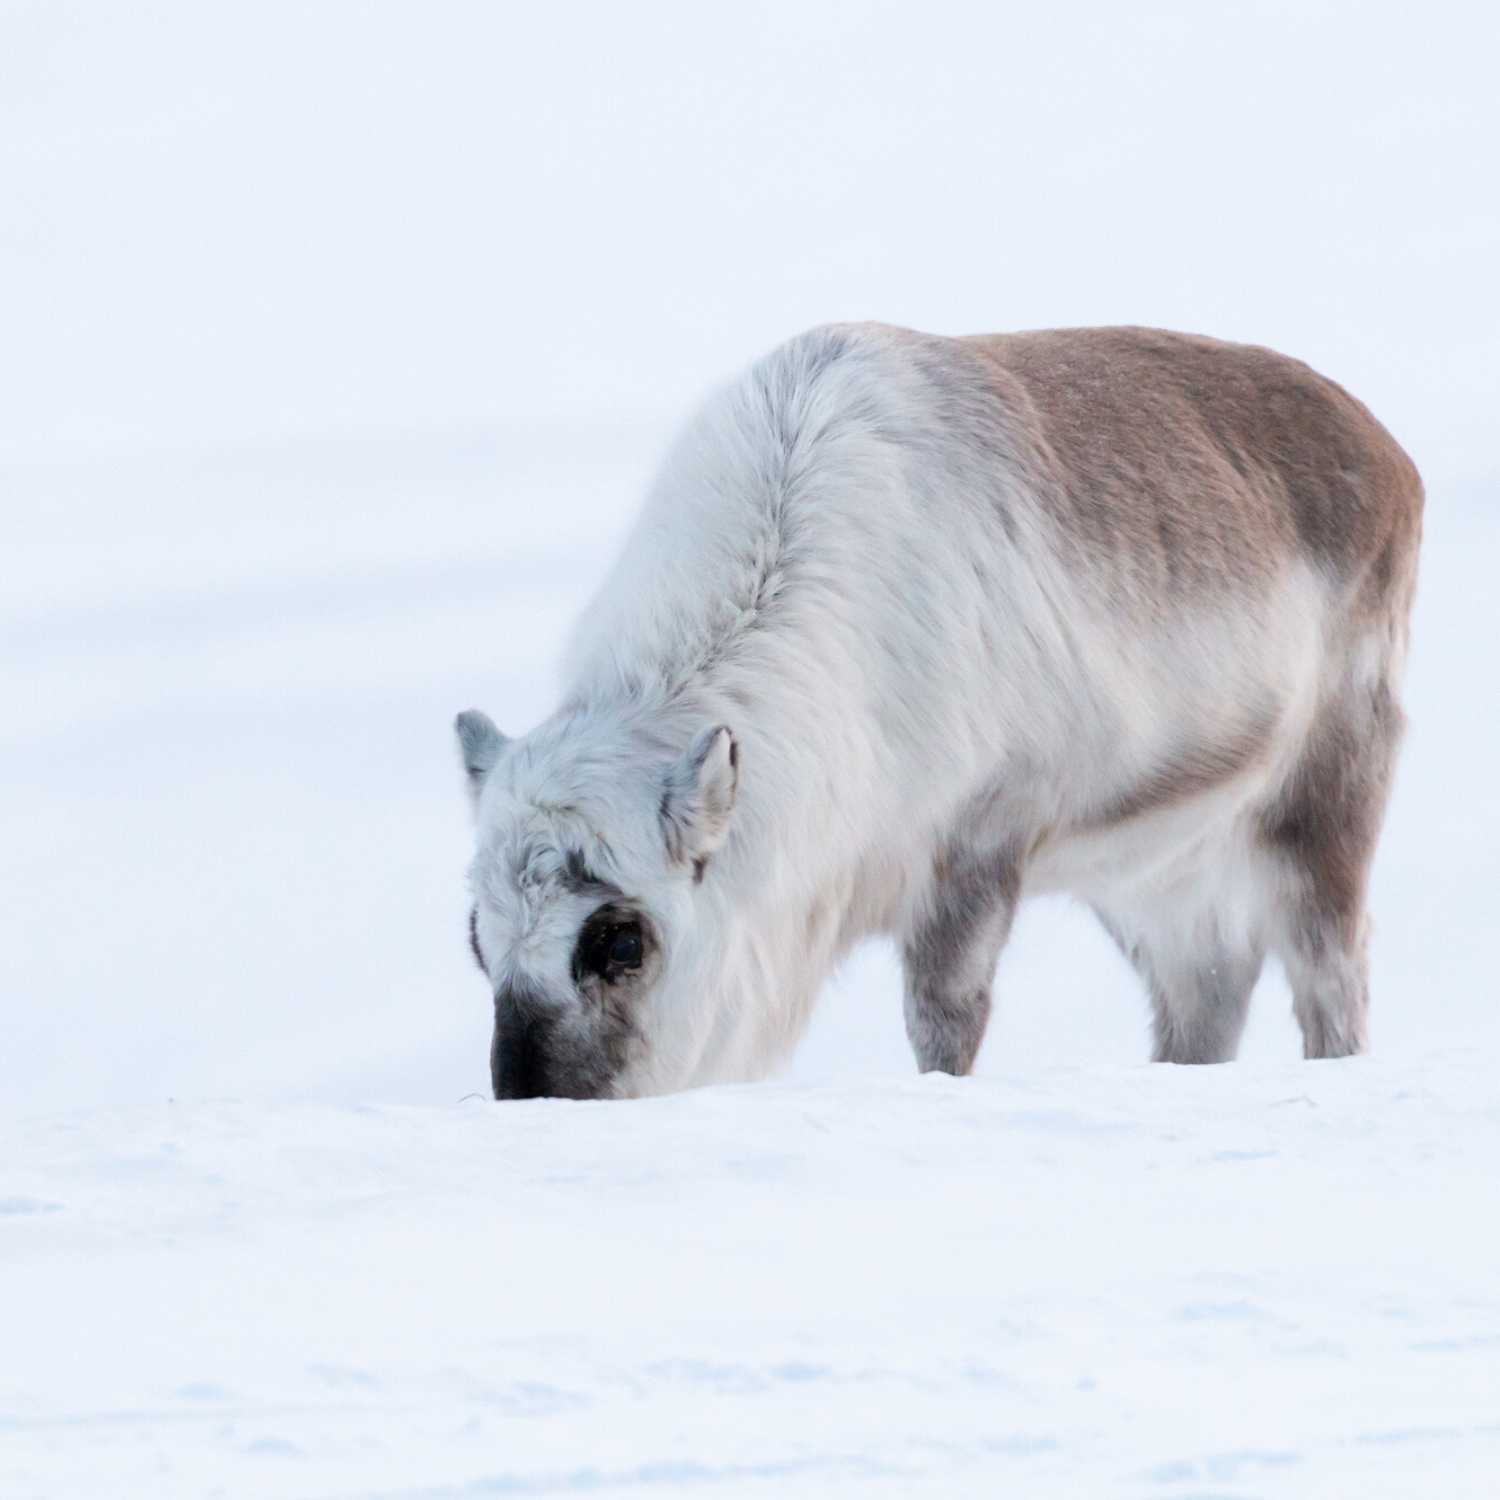 Square Artic Reindeer Svalbard Photography Tour with award-winning photographer Ignacio Palacios and Ken Duncan